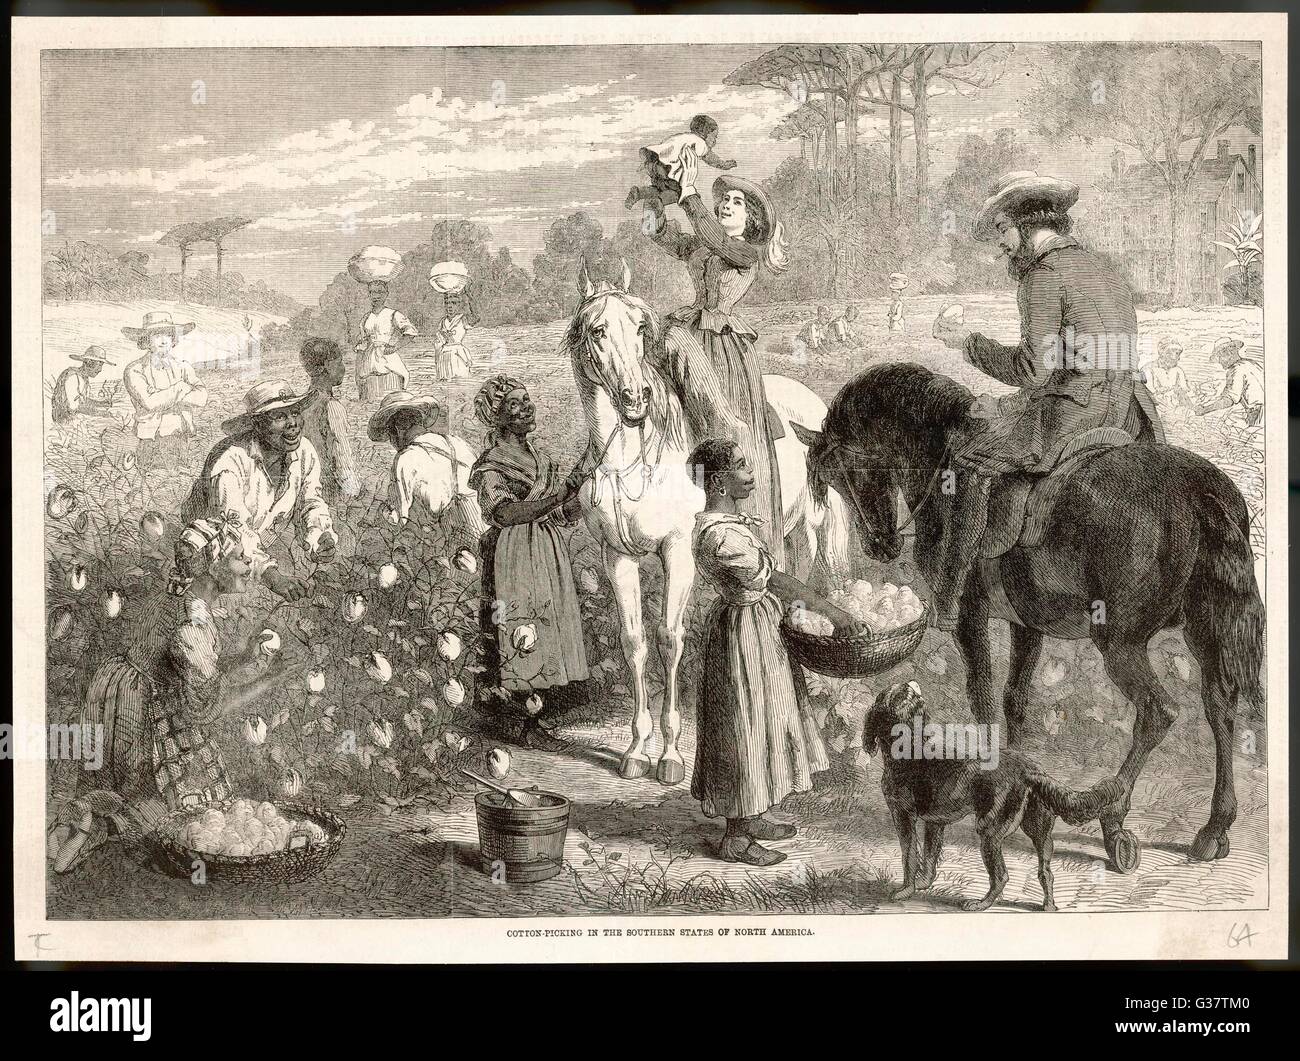 Zufriedene Sklaven mit einem freundlich, Baumwollfeldern in der südlichen Staaten von Nordamerika - Datum: 1864 Stockfoto